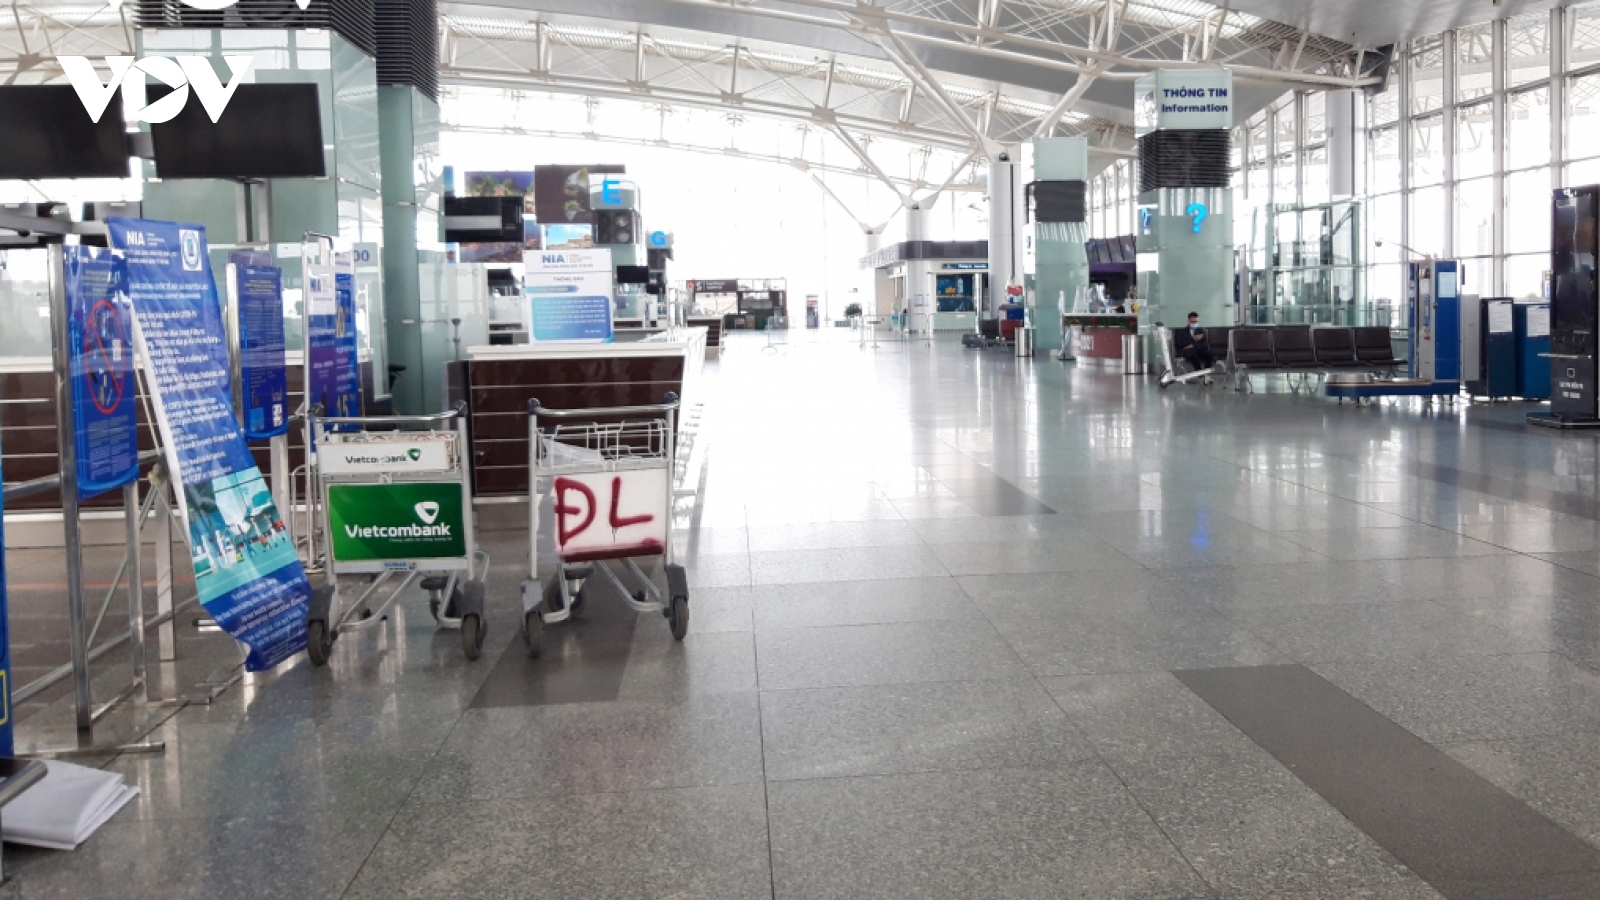 Noi Bai International Airport falls quiet again due to COVID-19 fears